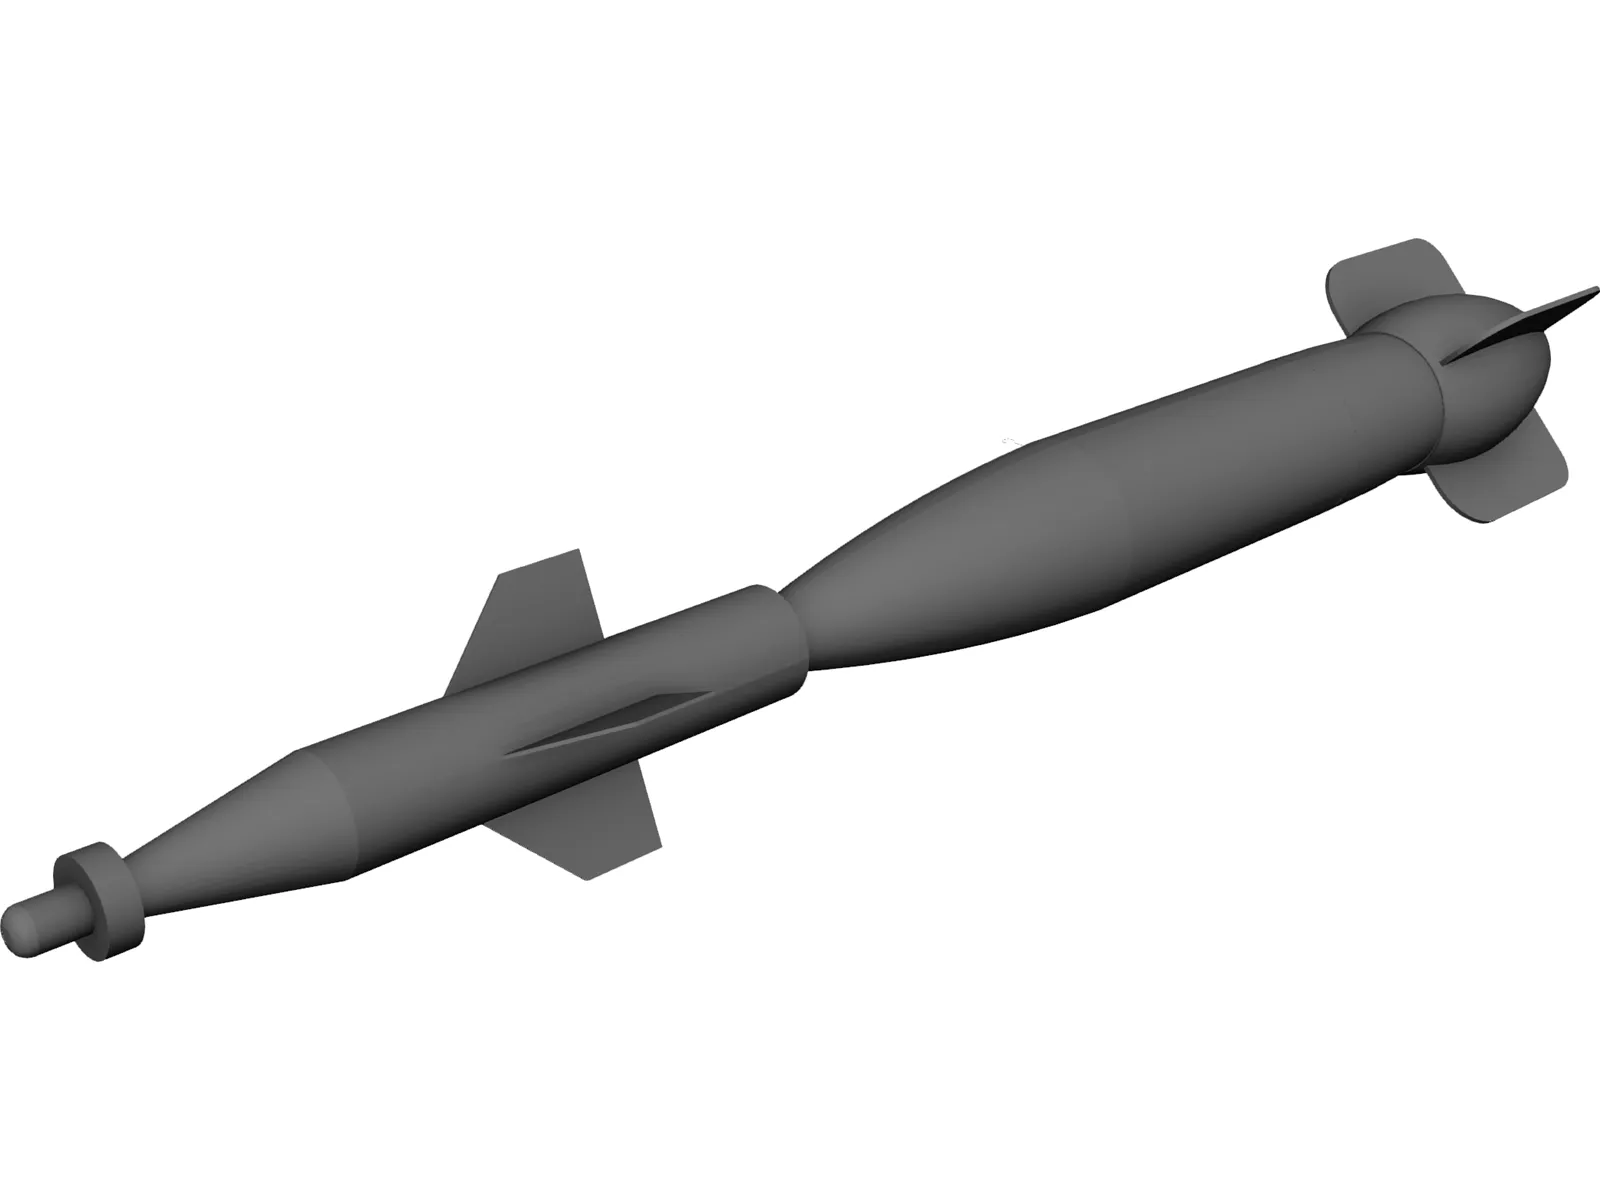 GBU-16 Laser Guided Weapon 3D Model